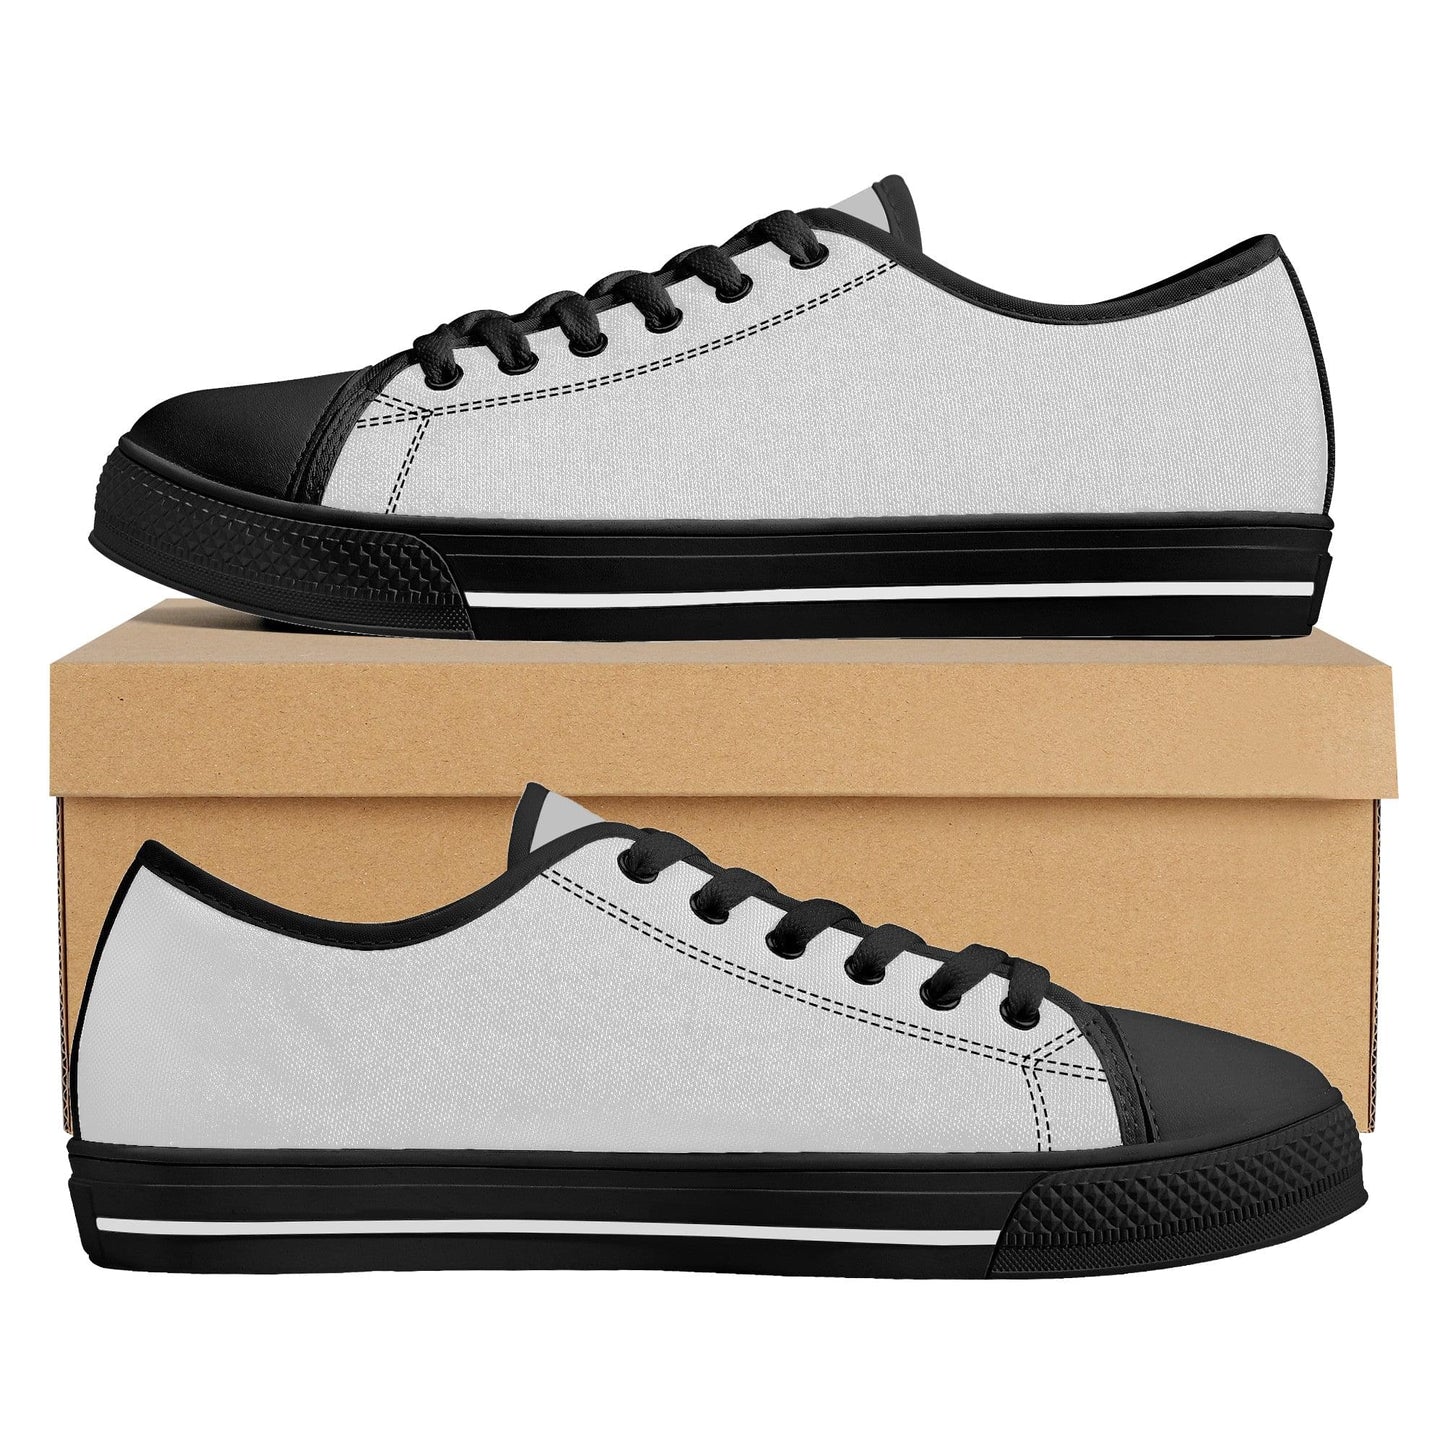 Custom Low Top Shoes Canvas - Black FXS Colloid Colors 